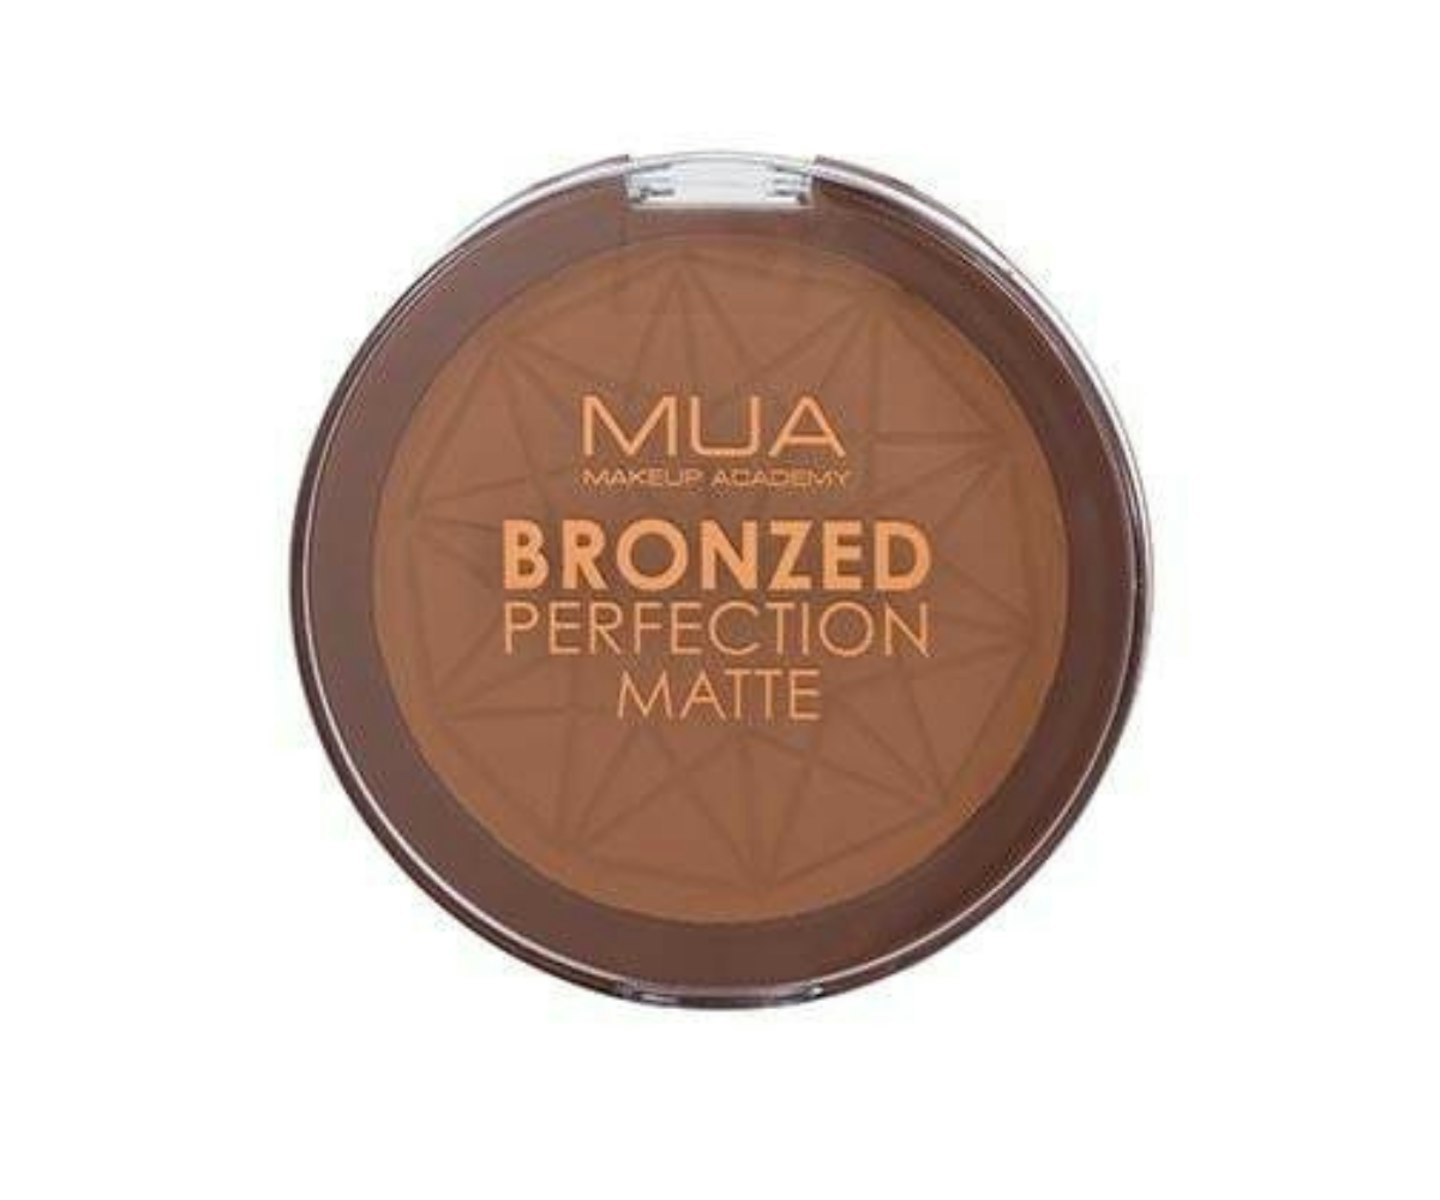 MUA Bronzed Perfection Matte - Sunset Tan